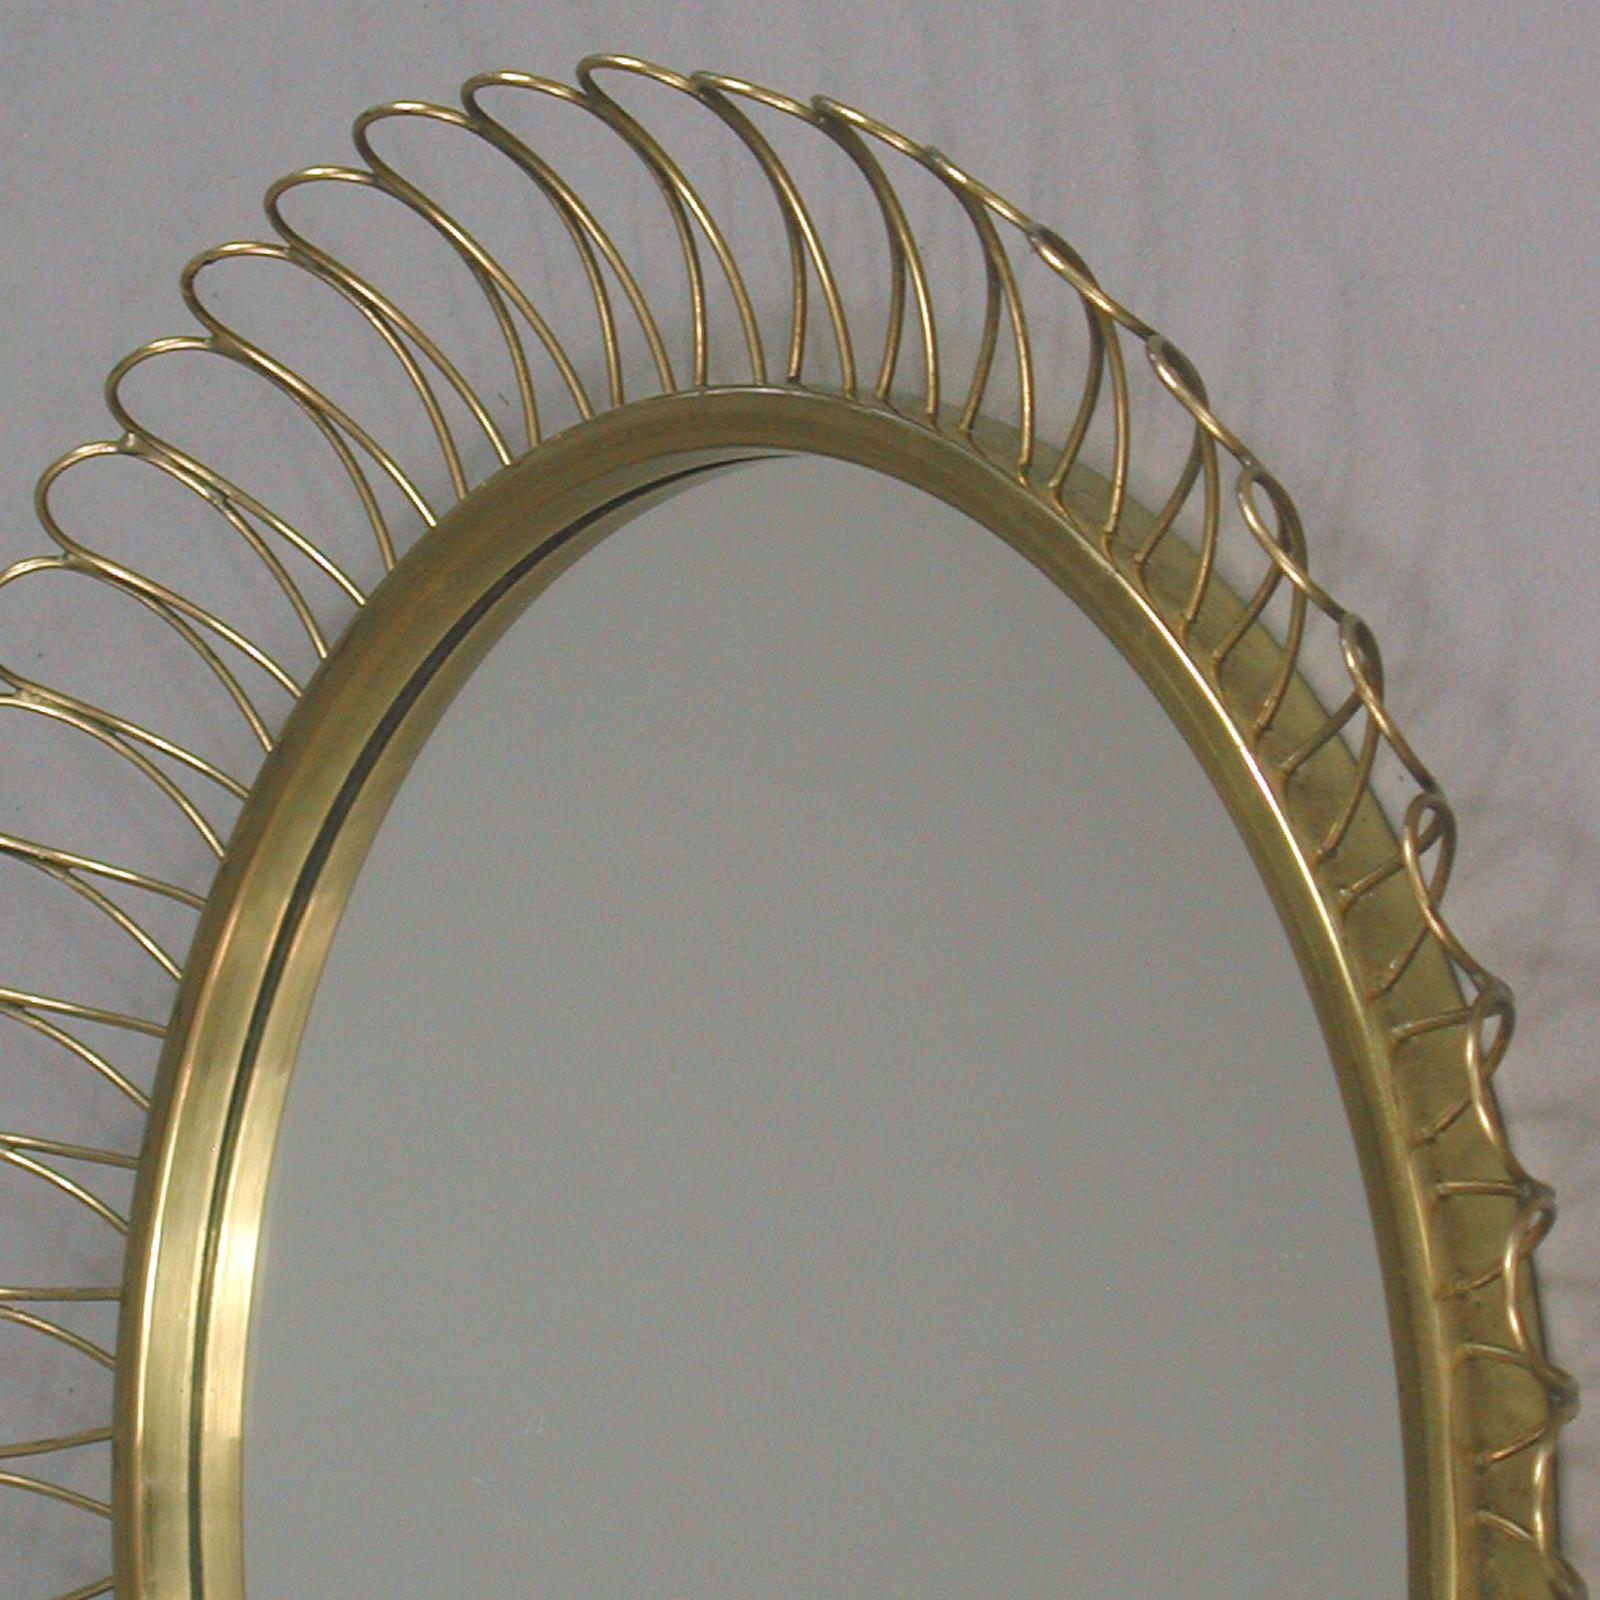 Midcentury Sculptural Round Brass Wall Mirror, Sweden, 1950s For Sale 2